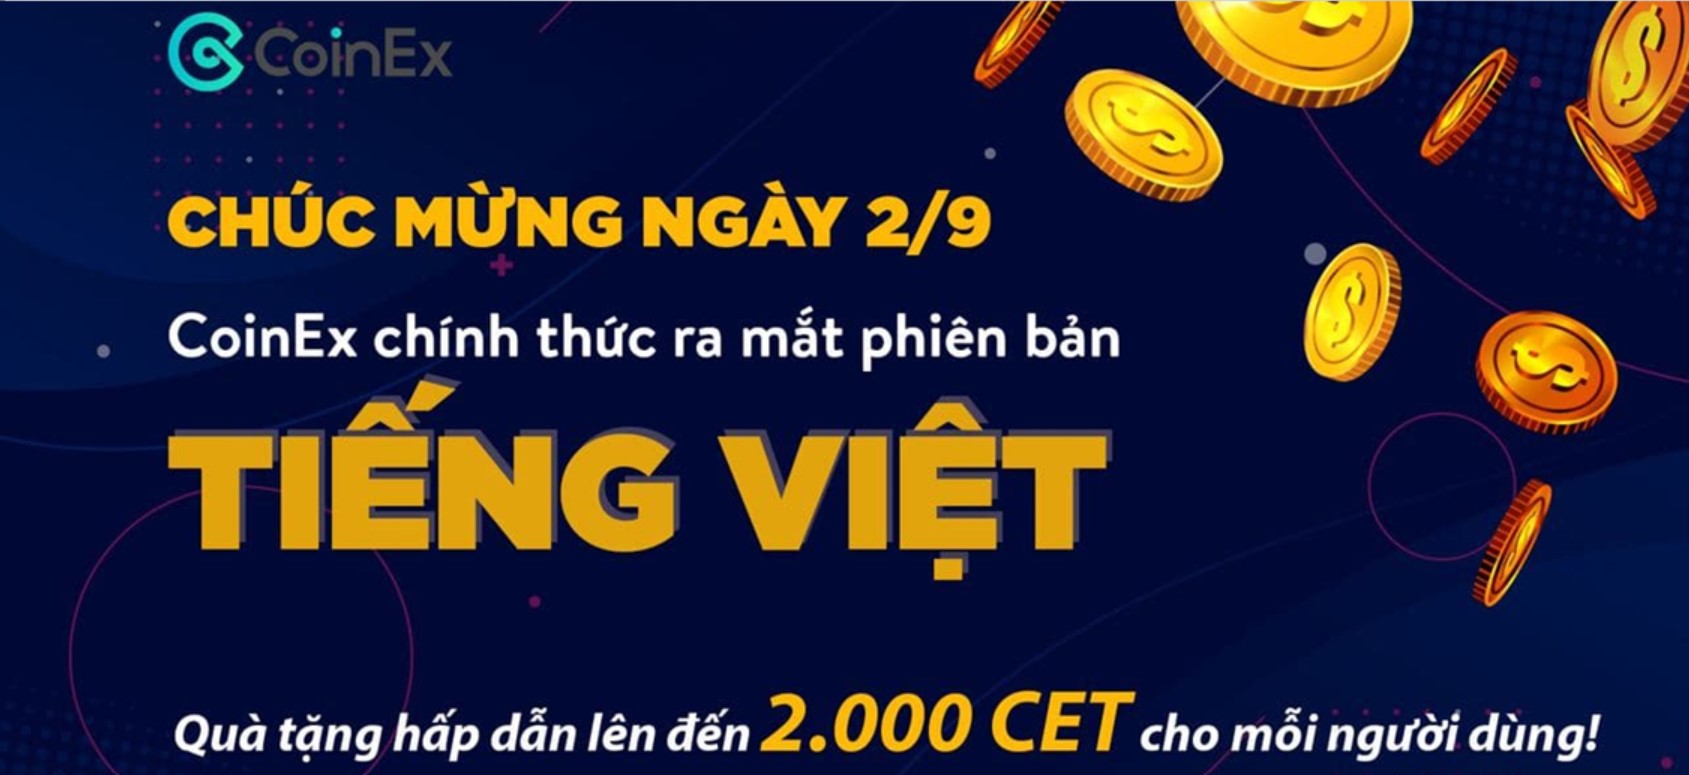 Gros bonus jusqu'à 2000 CET pour célébrer le lancement de la version vietnamienne de CoinEx